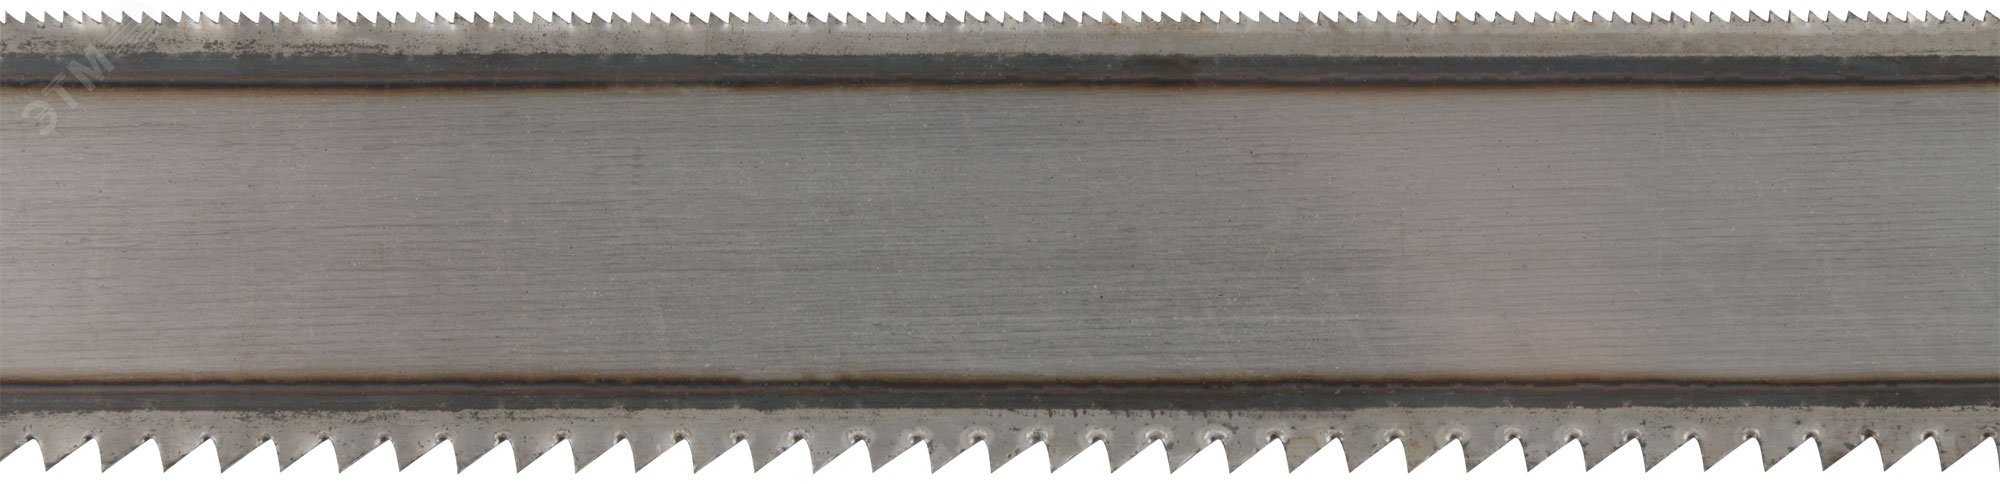 Полотна ножовочные металл/дерево (24 TPI / 8 TPI), каленый зуб, широкие двусторонние, 300х24 мм, 72 шт 40163 FIT - превью 2